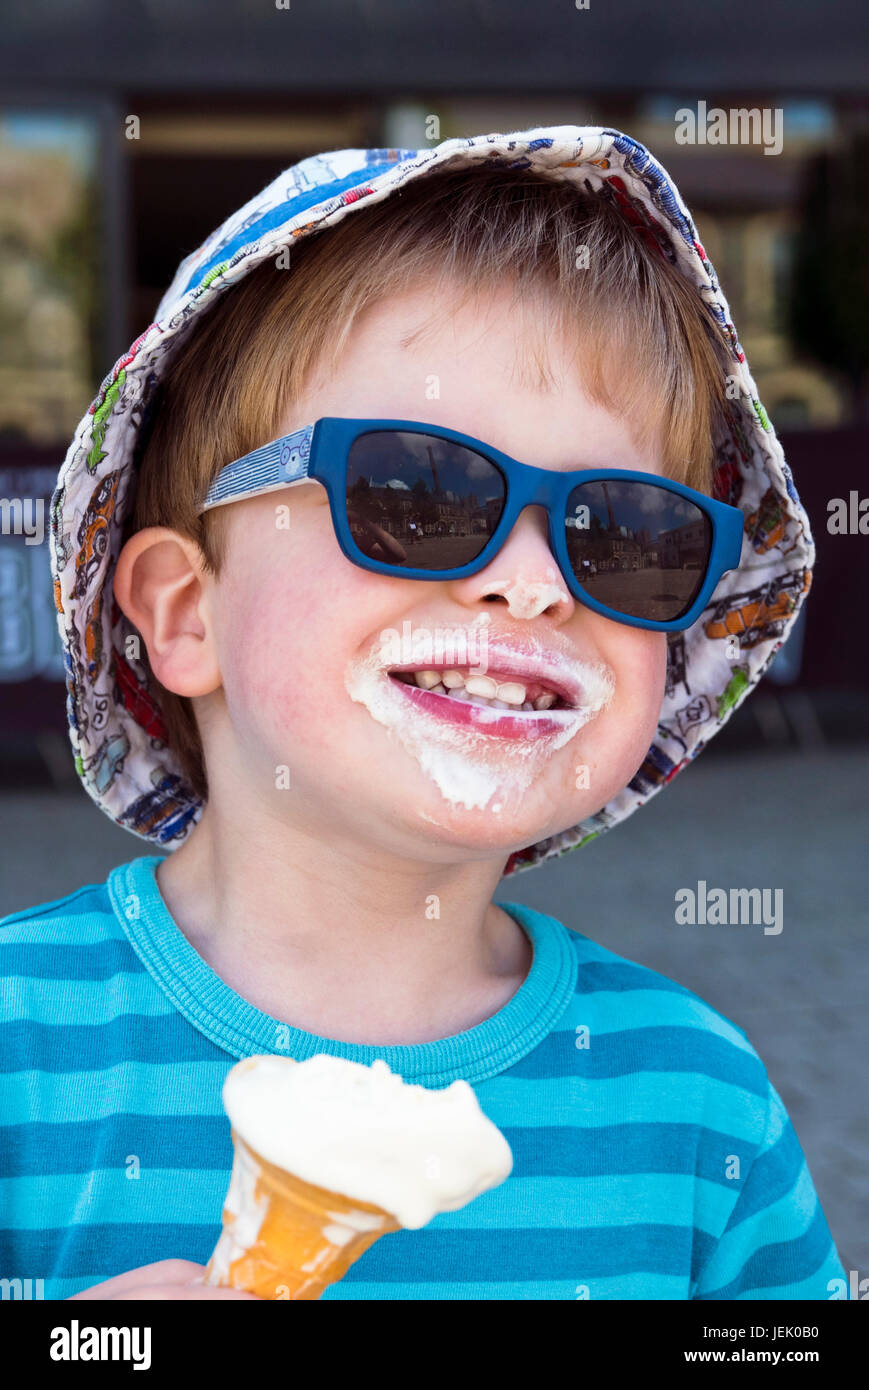 Jeune garçon portant des lunettes de soleil et la consommation de crème glacée Banque D'Images